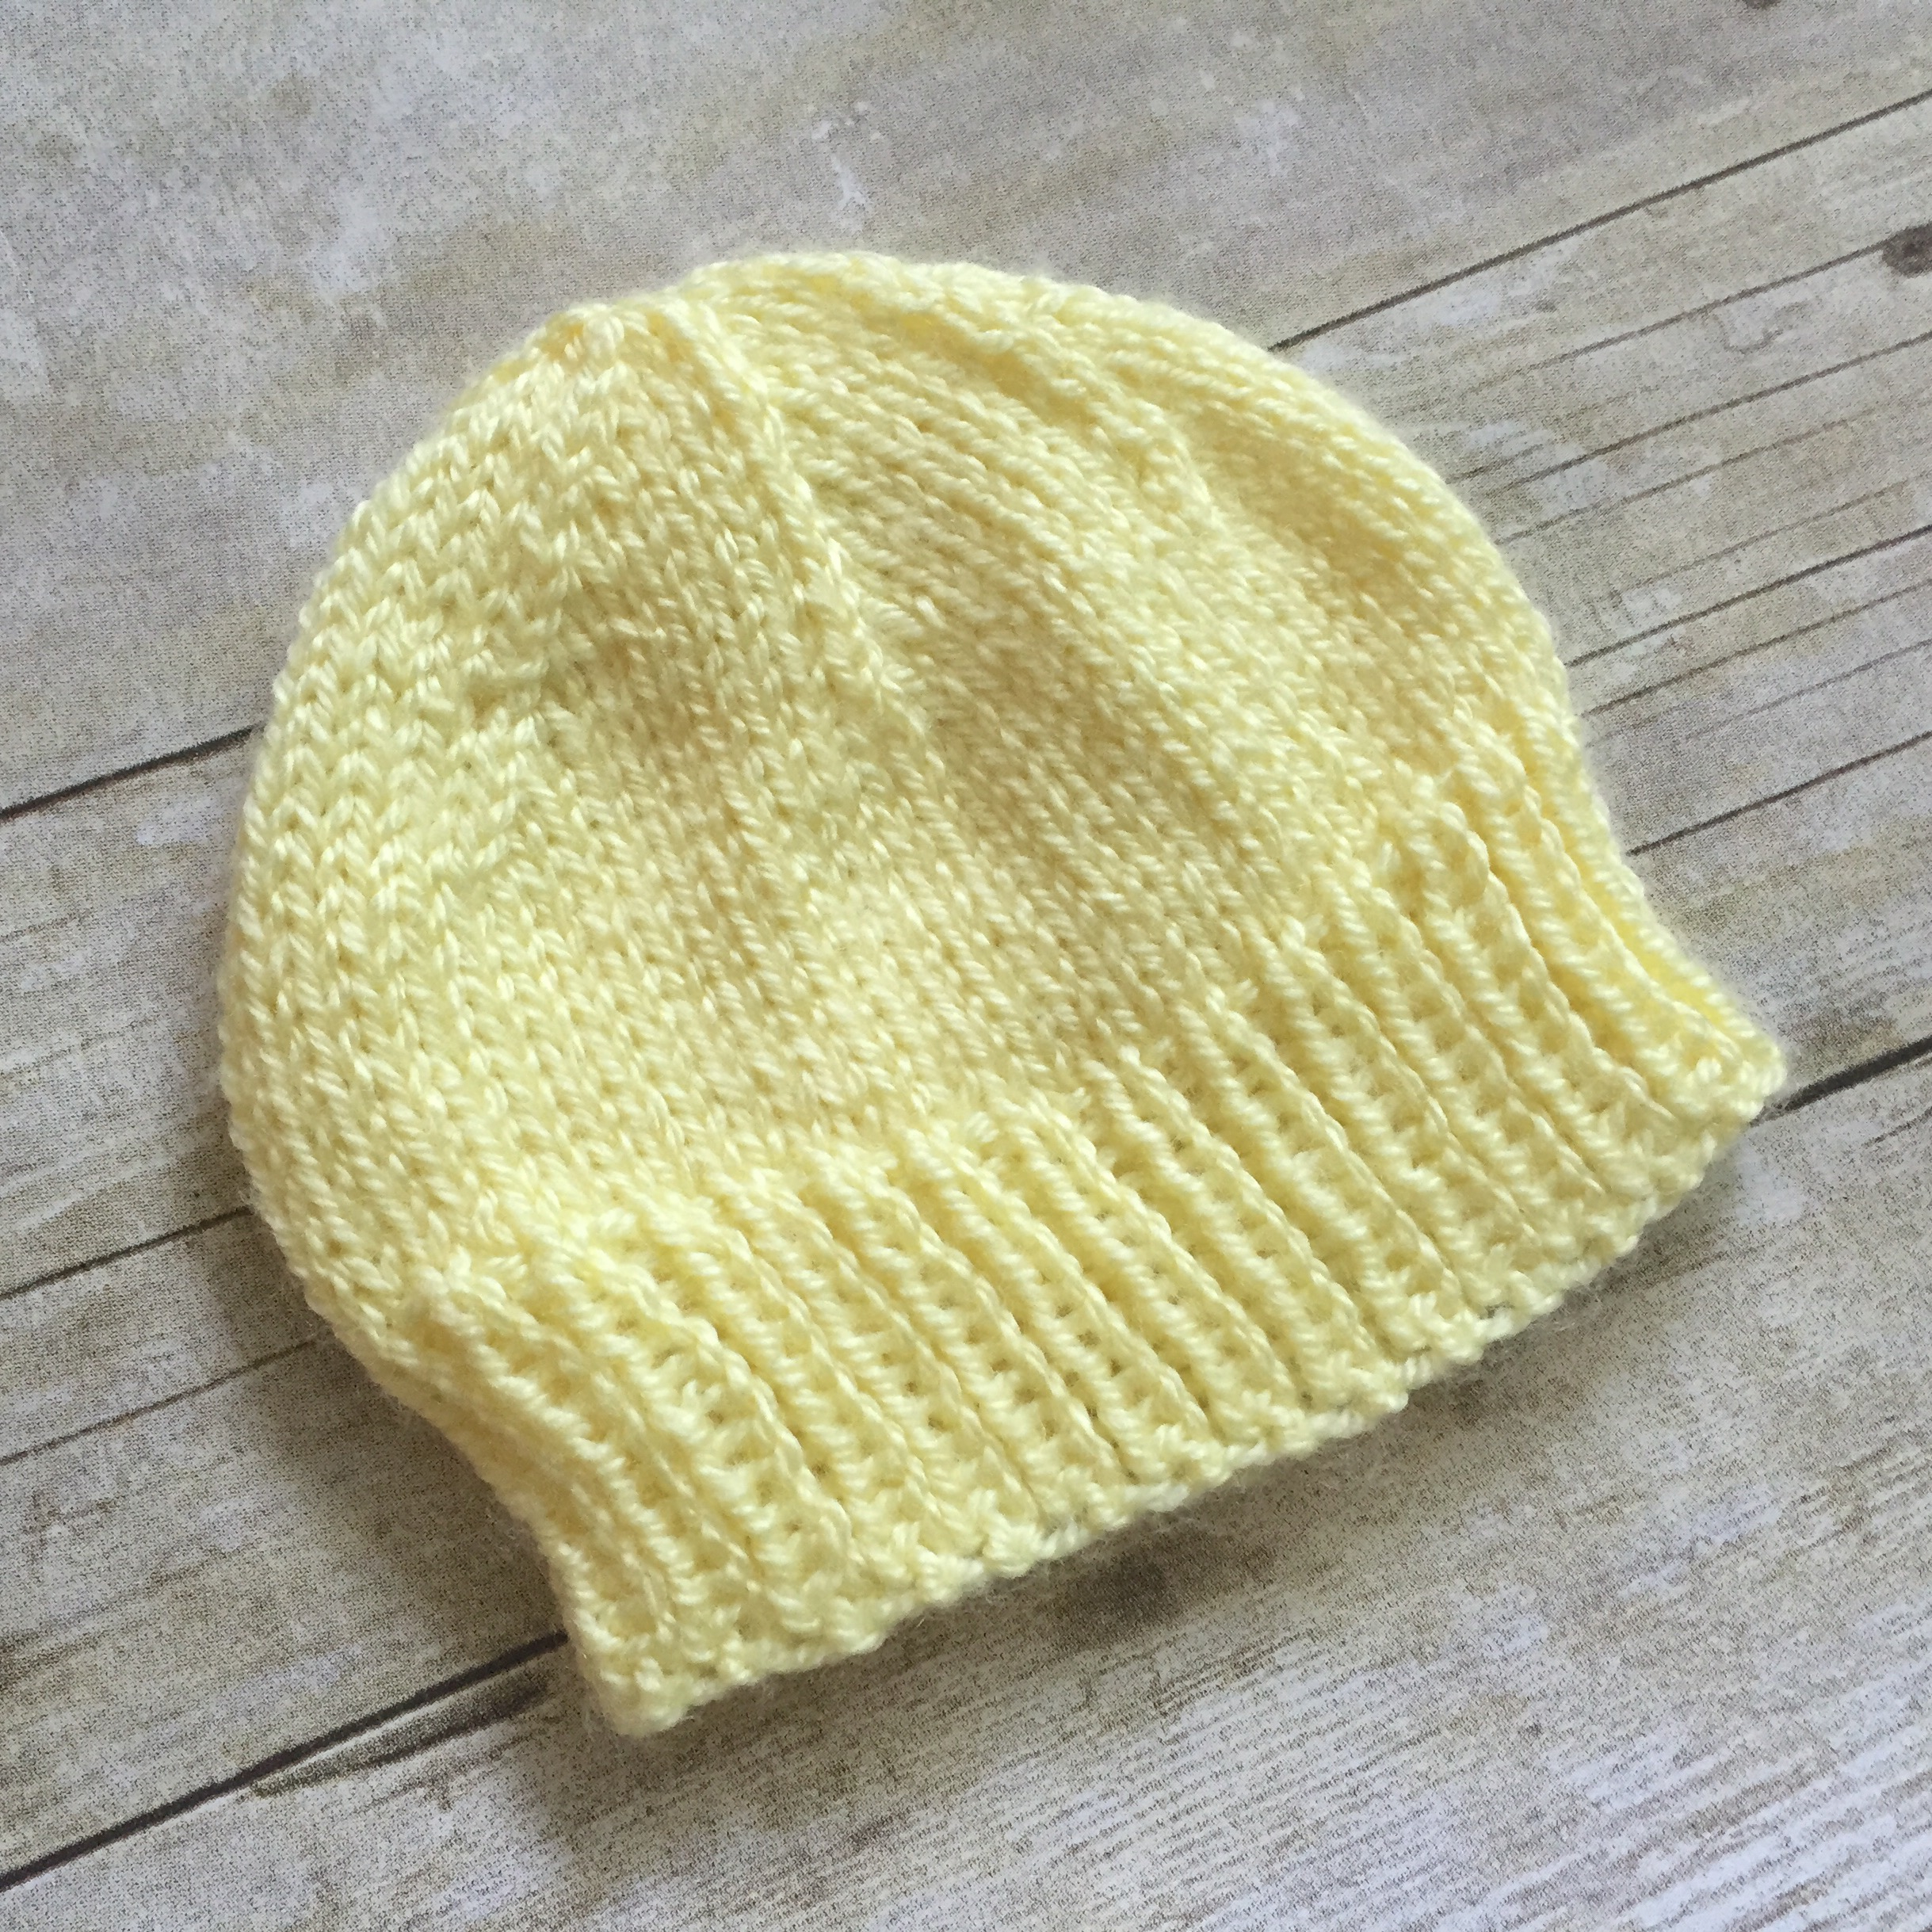 Hats To Knit Free Patterns Newborn Ba Hat To Knit Free Knitting Pattern Swanjay